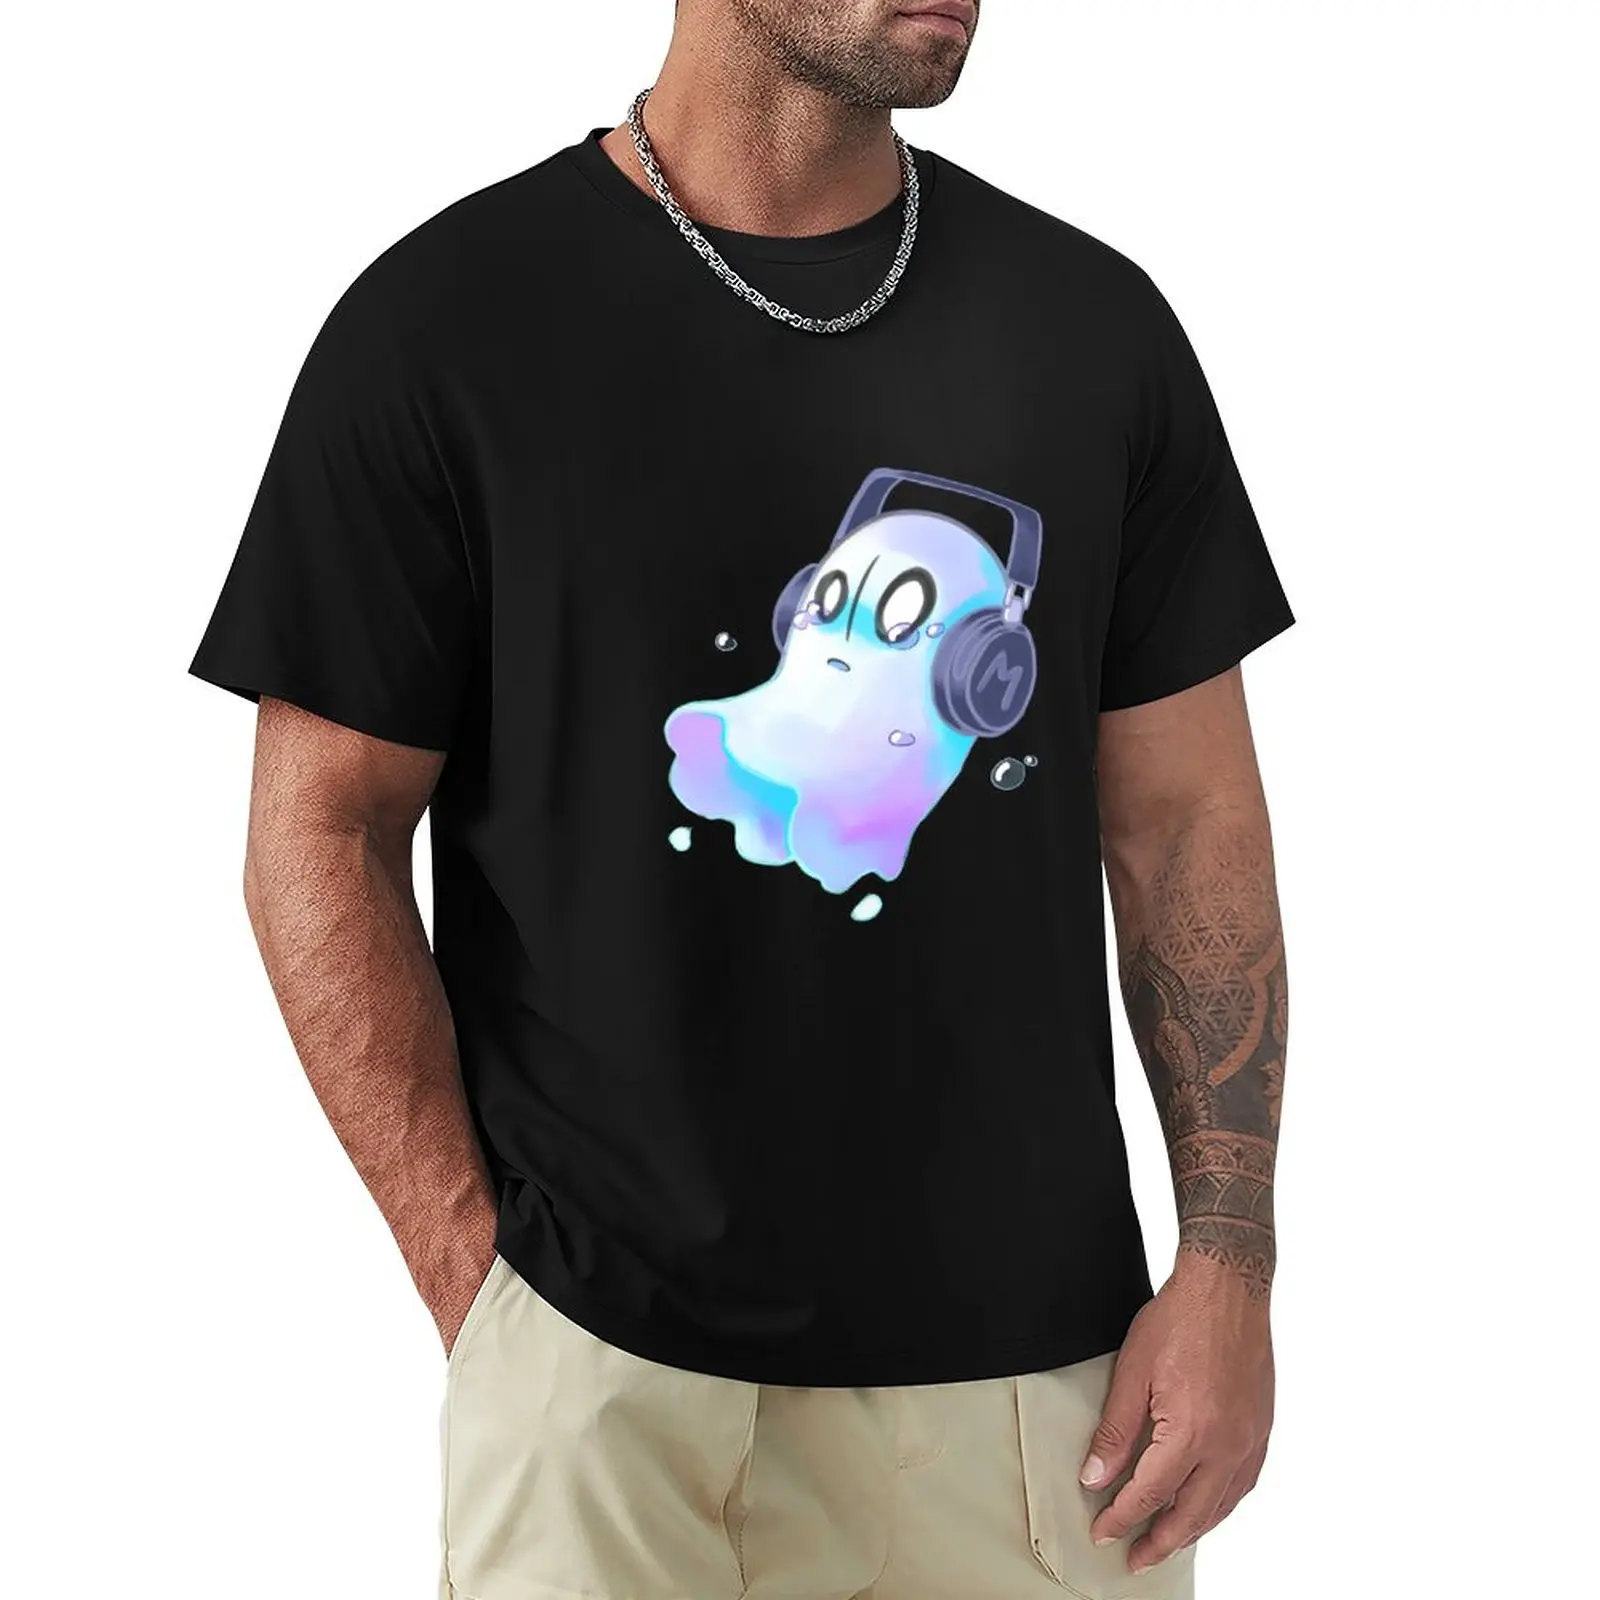 Napstablook-Camiseta con estampado de animales para niños, blusa corta, camisetas gráficas divertidas